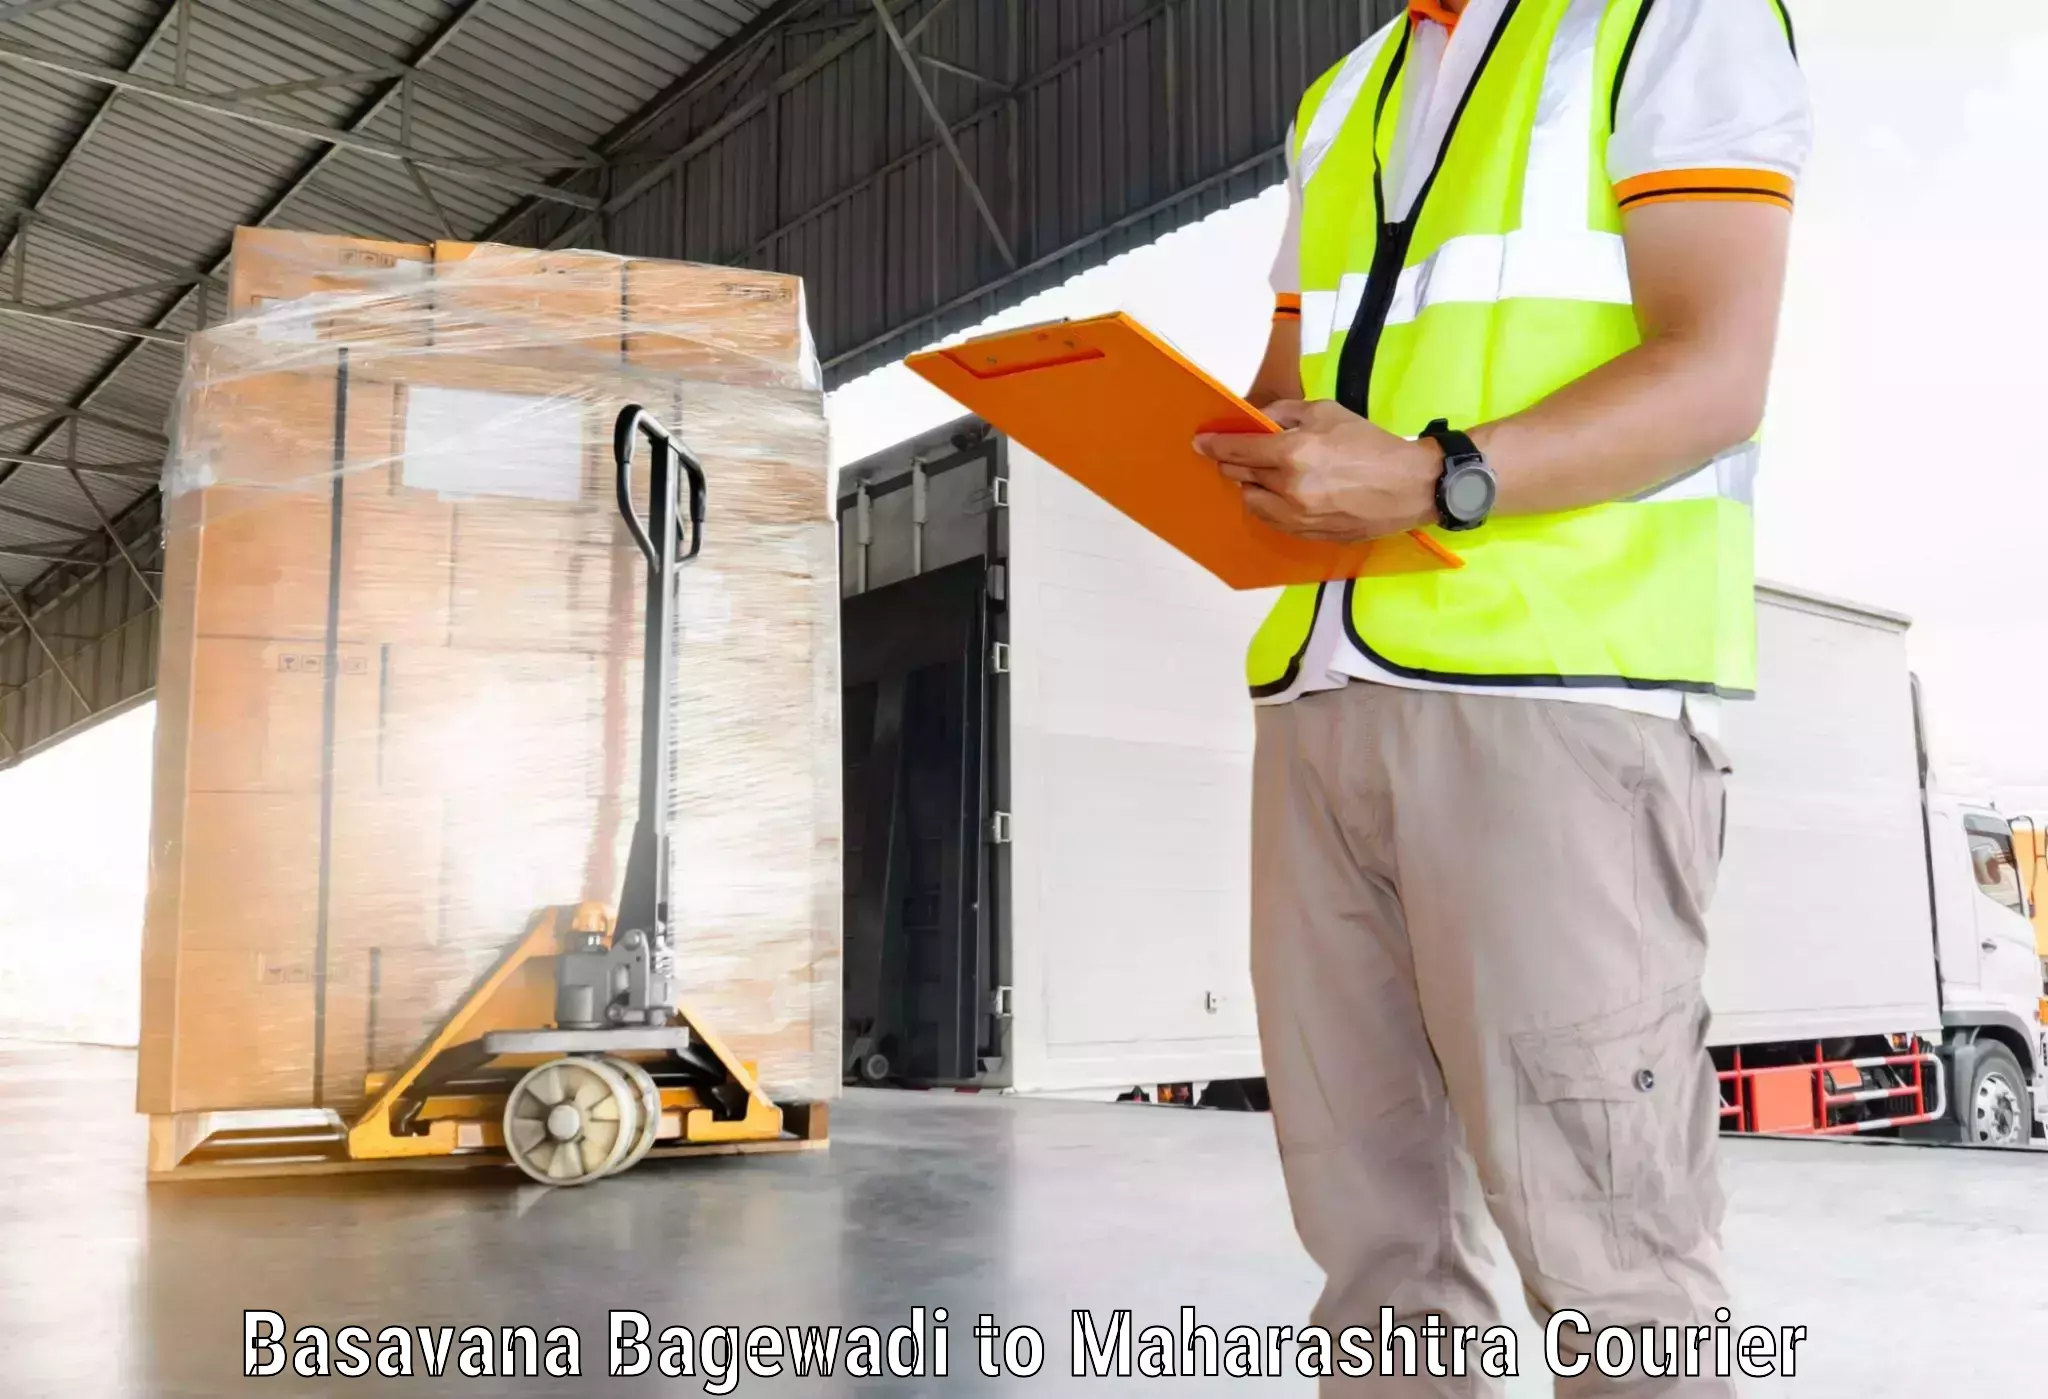 Tech-enabled shipping Basavana Bagewadi to Mahabaleshwar